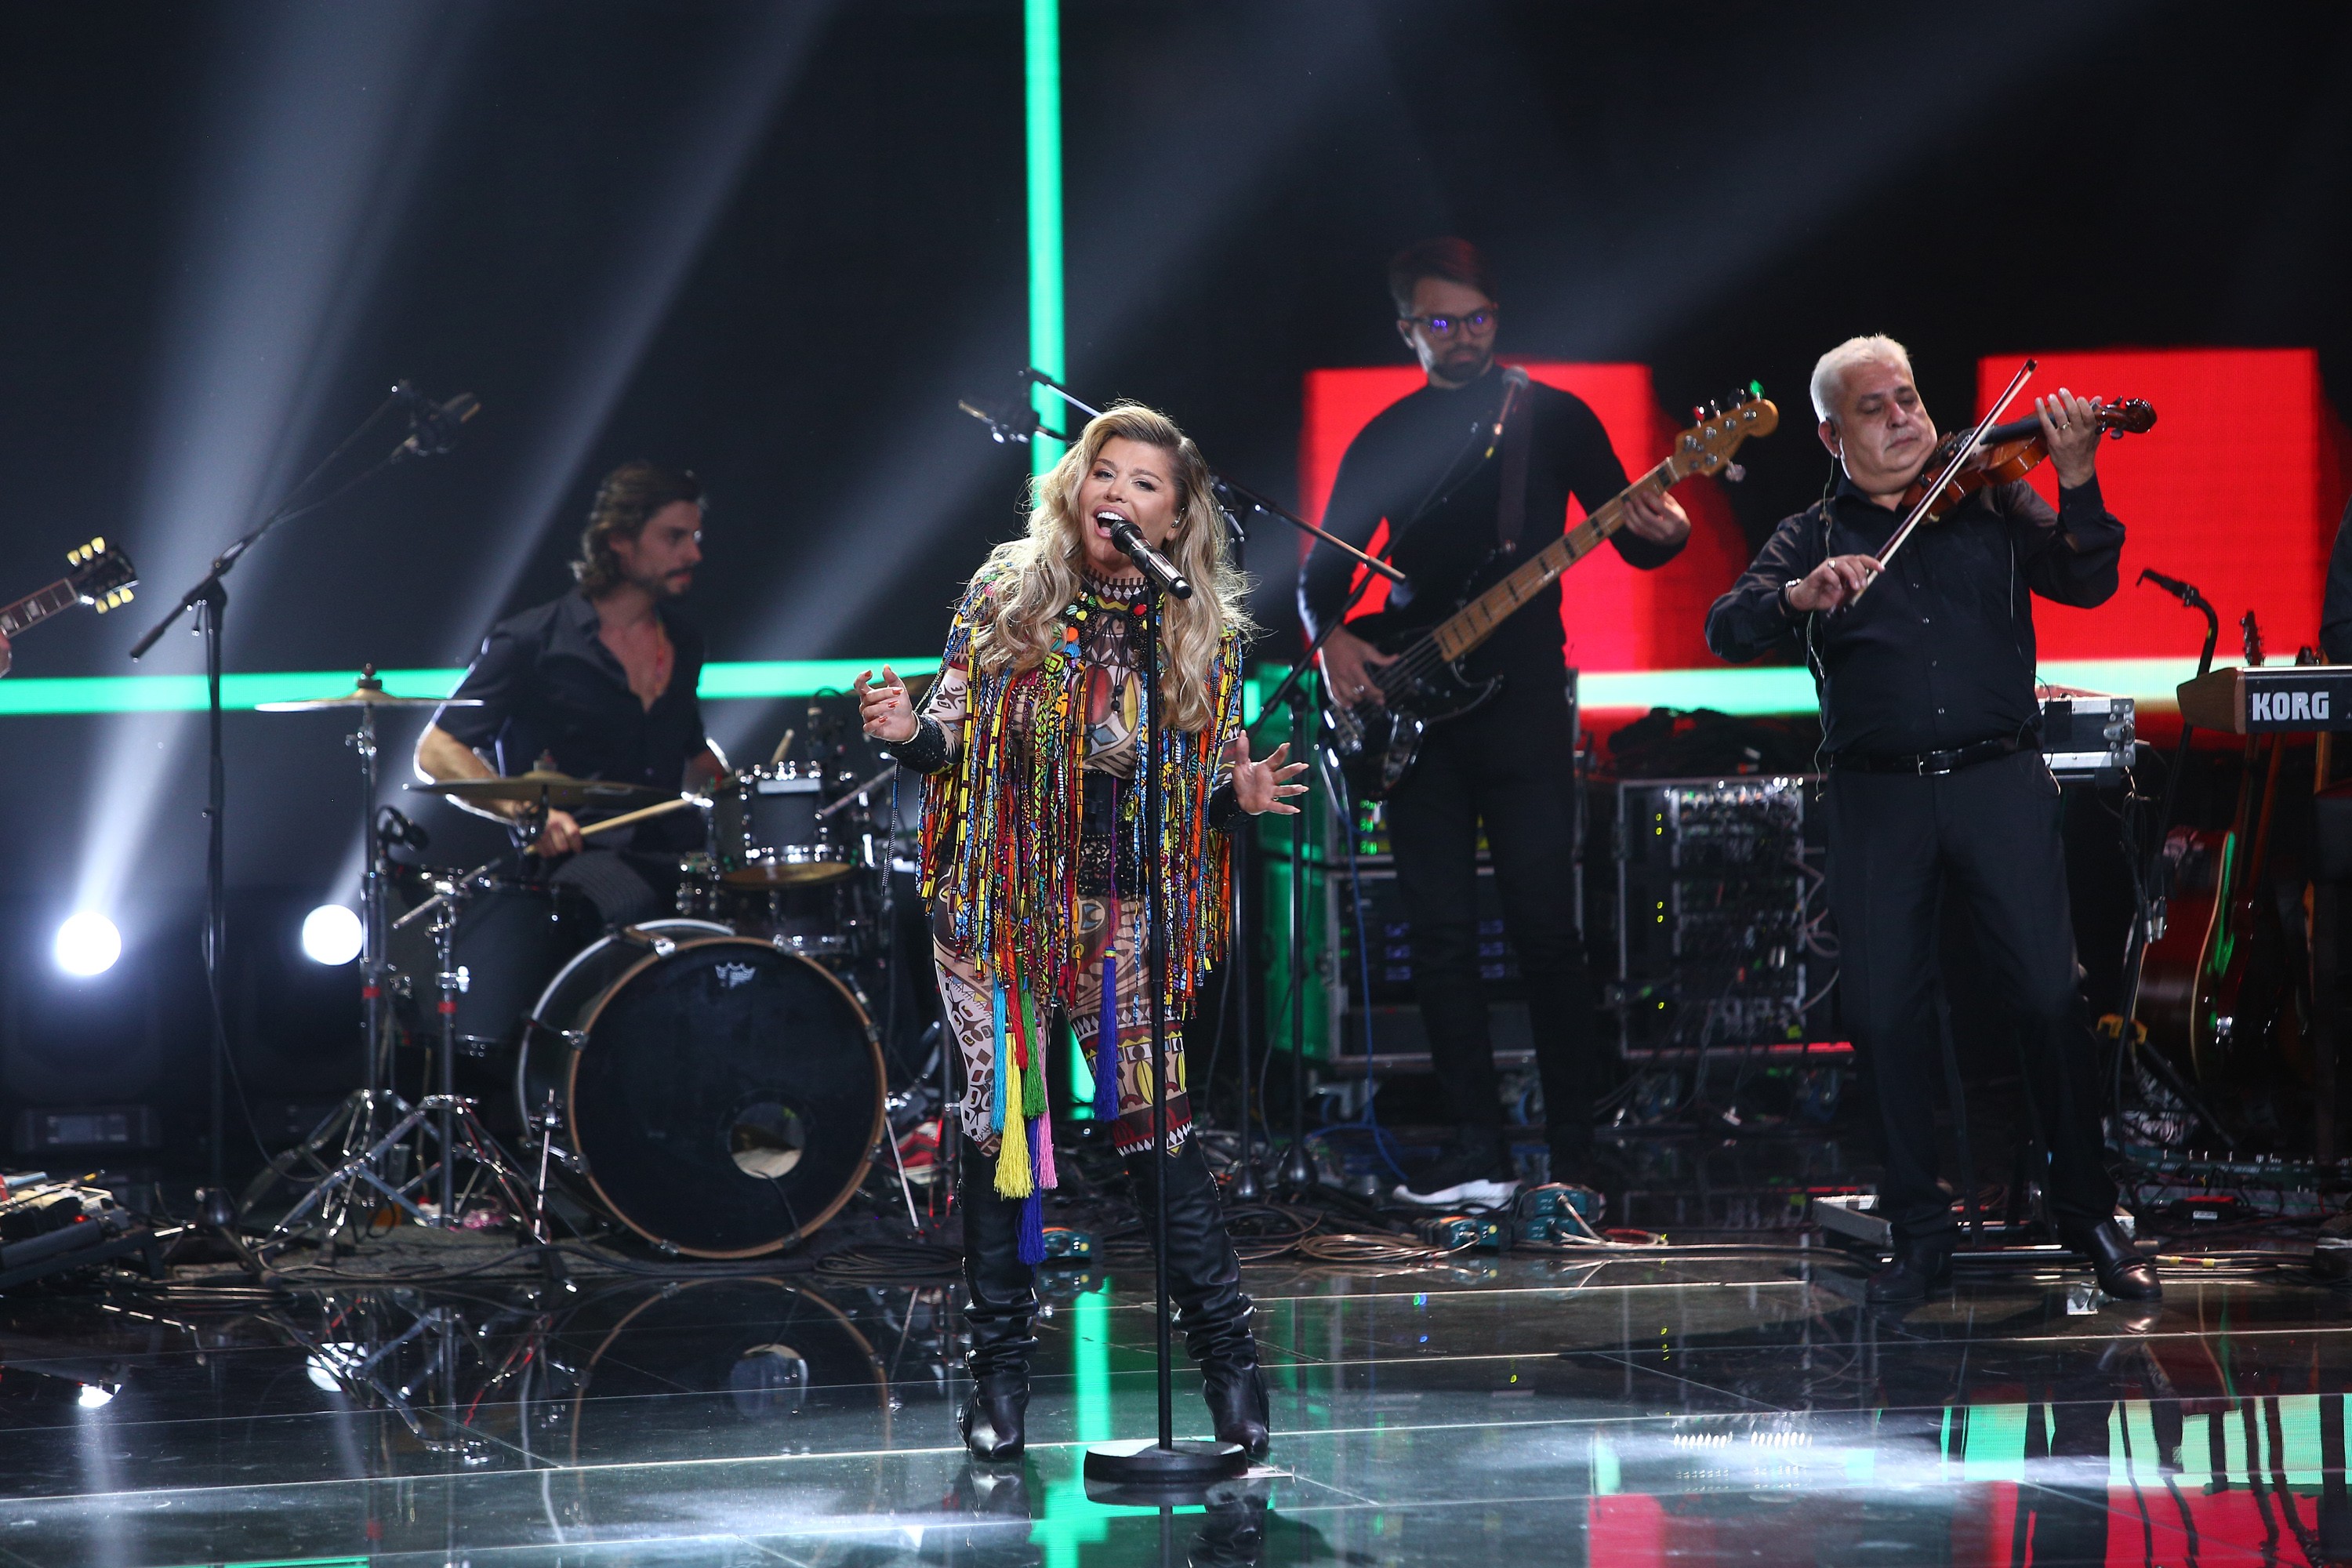 Finala X Factor 2020: Loredana & Agurida, show total pe scenă